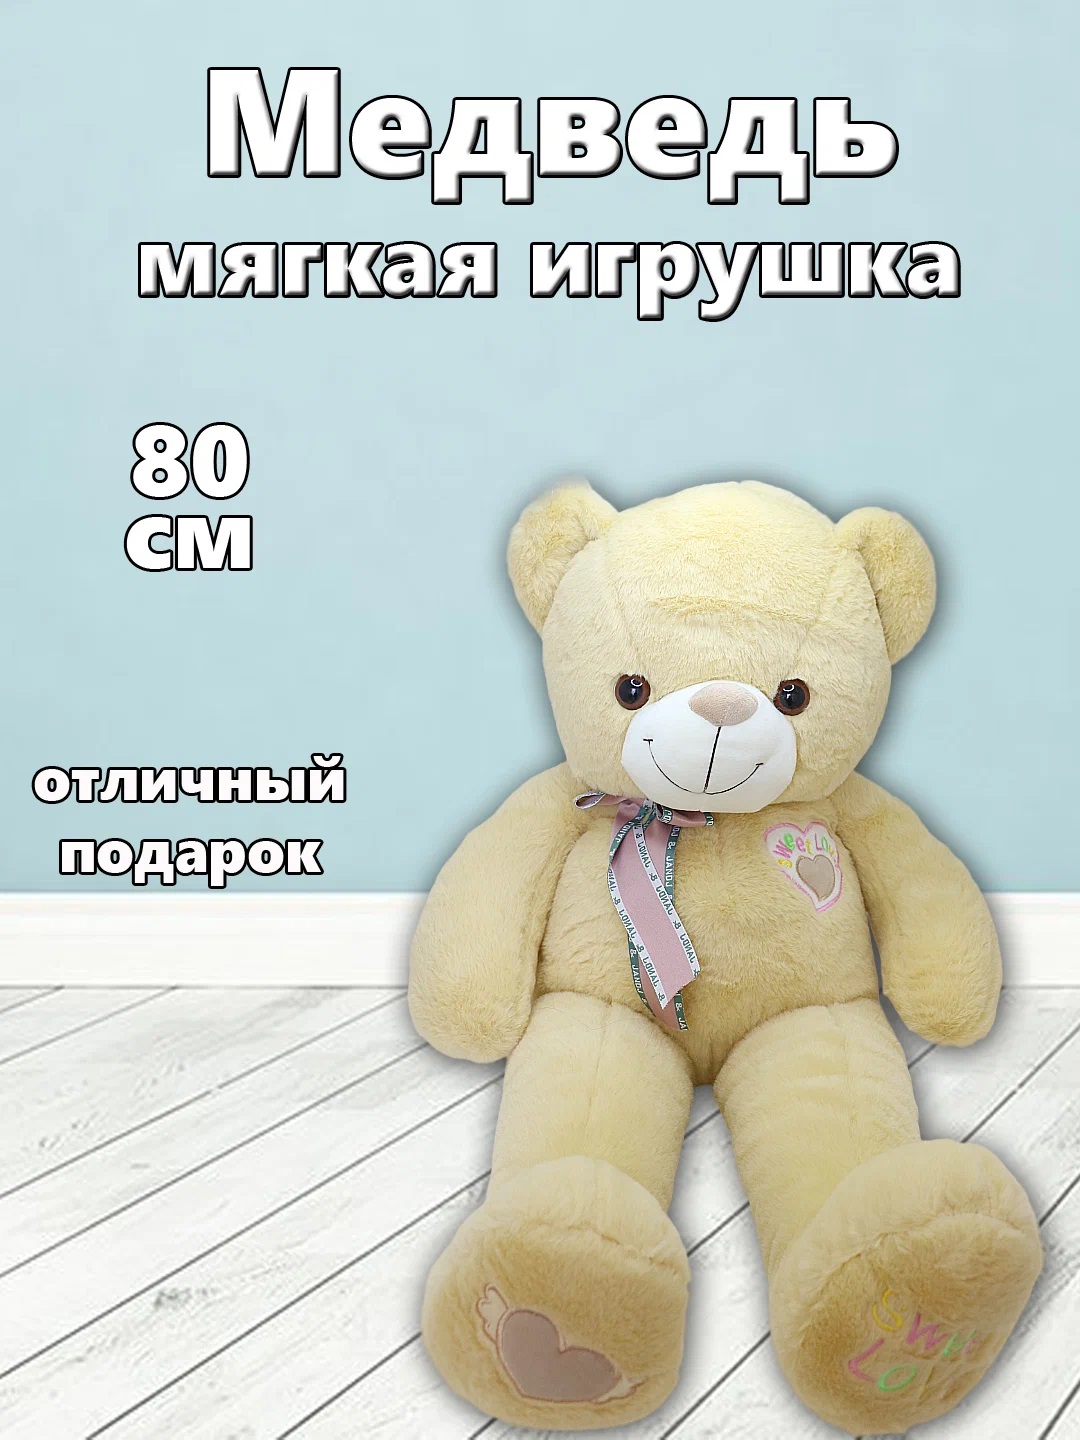 Мягкая игрушка TM S+S Медведь 80см коричневый мягкая плюшевая игрушка plush story медведь коричневый